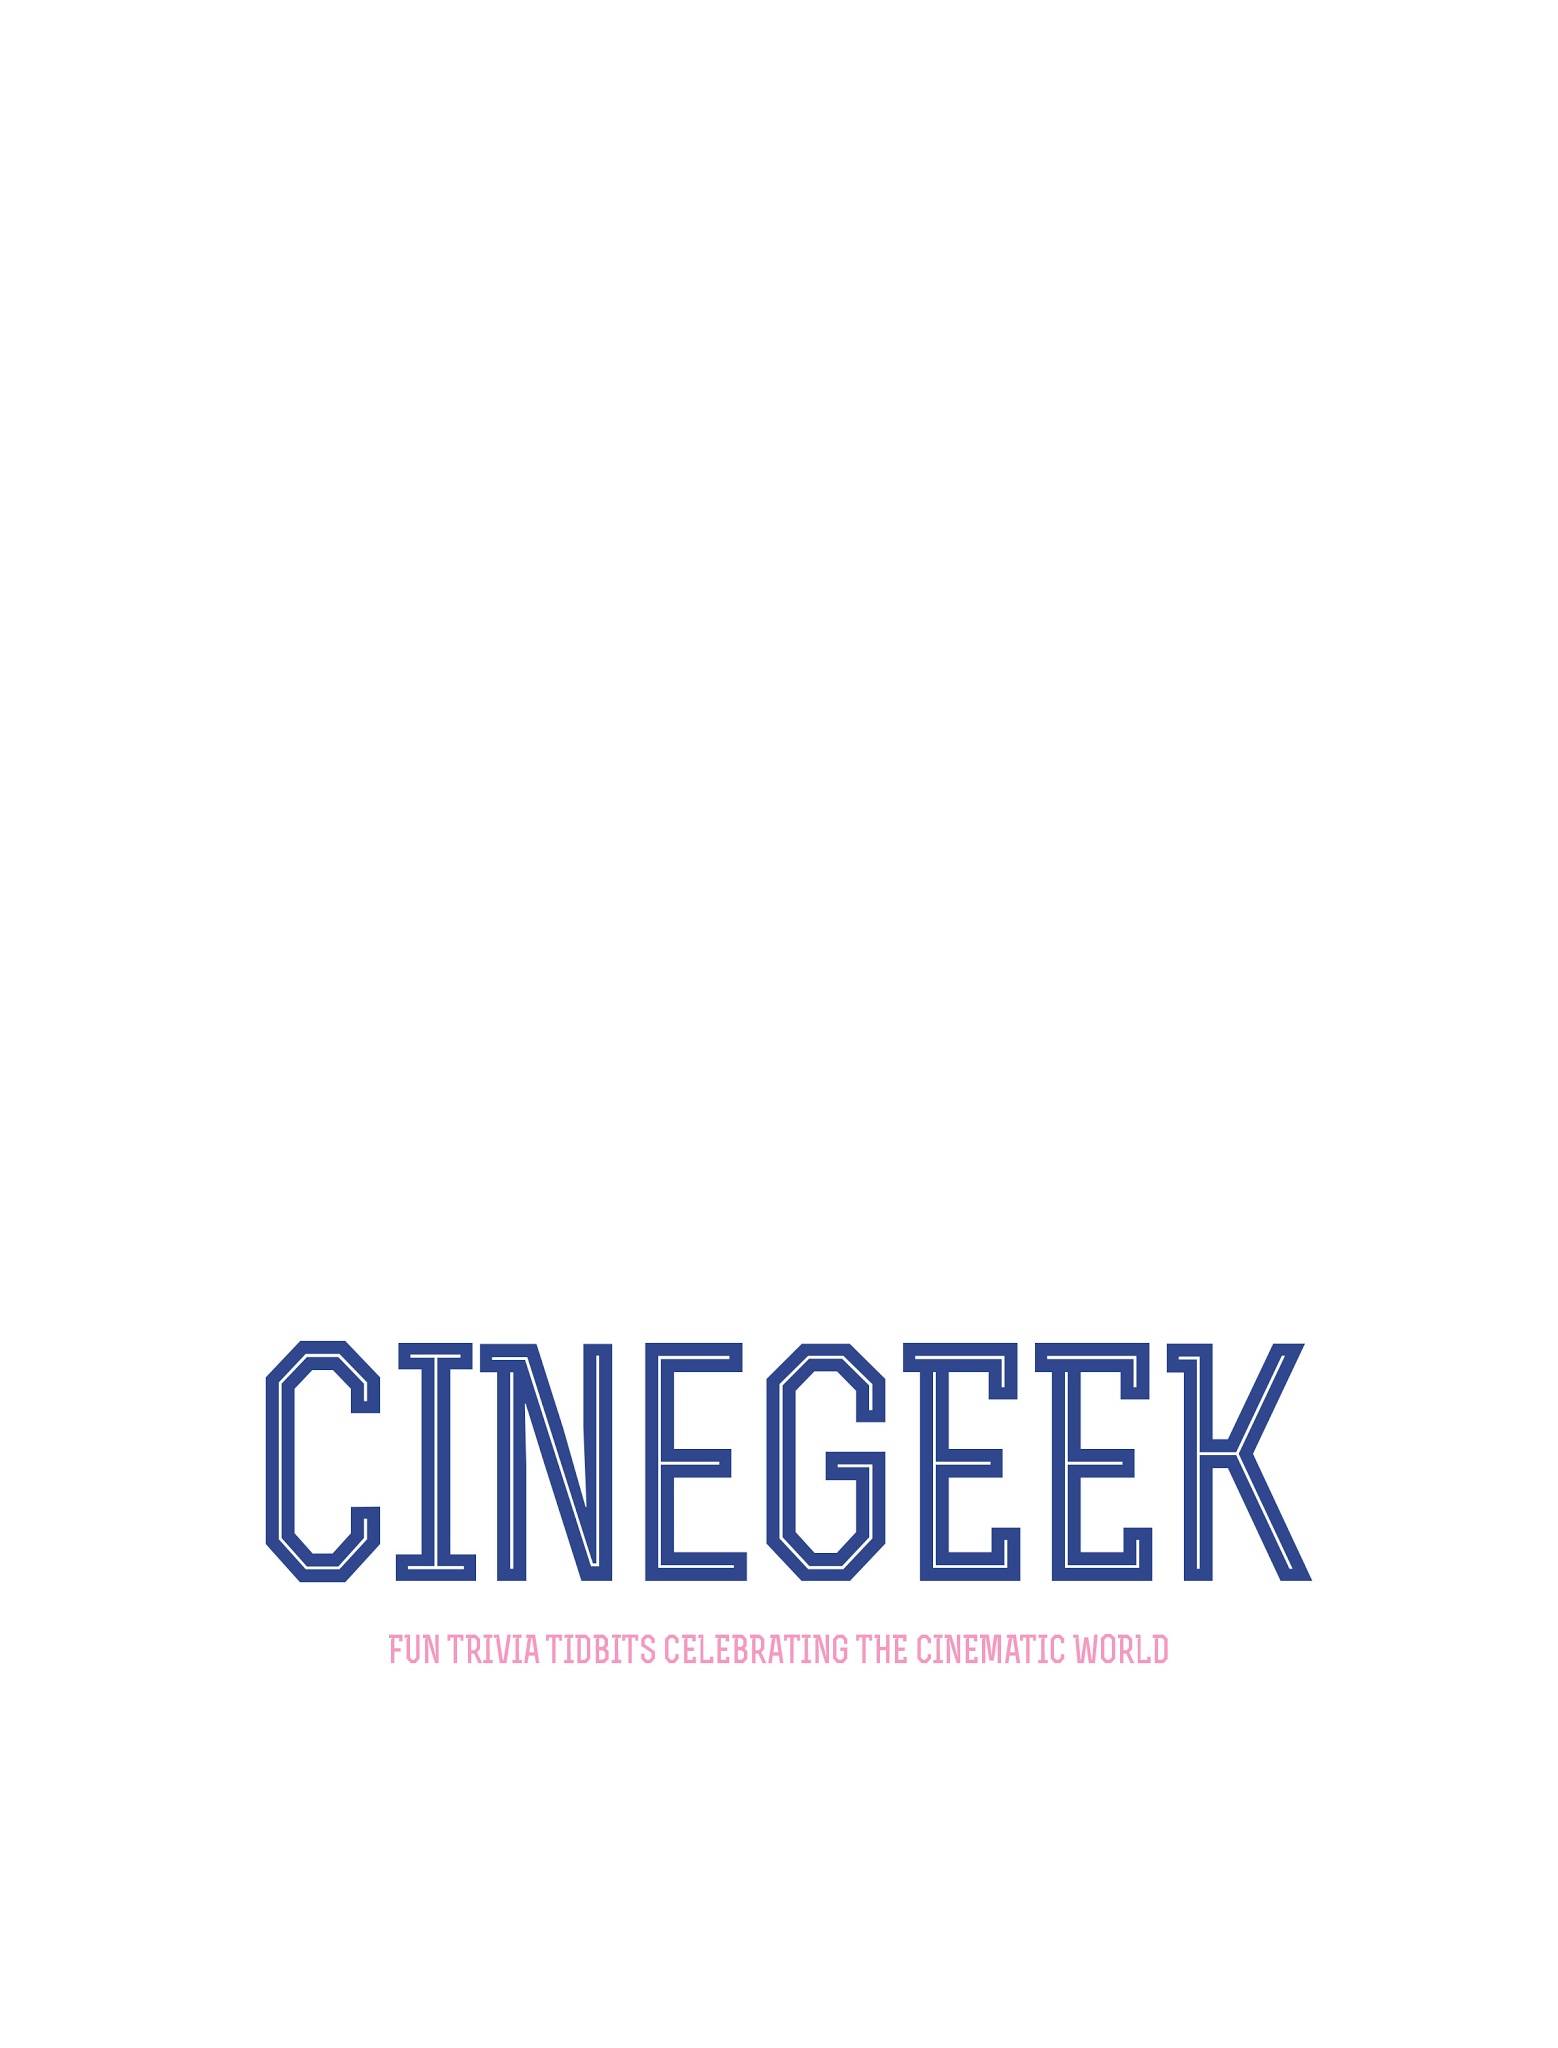 Read online Cinegeek comic -  Issue # TPB - 2